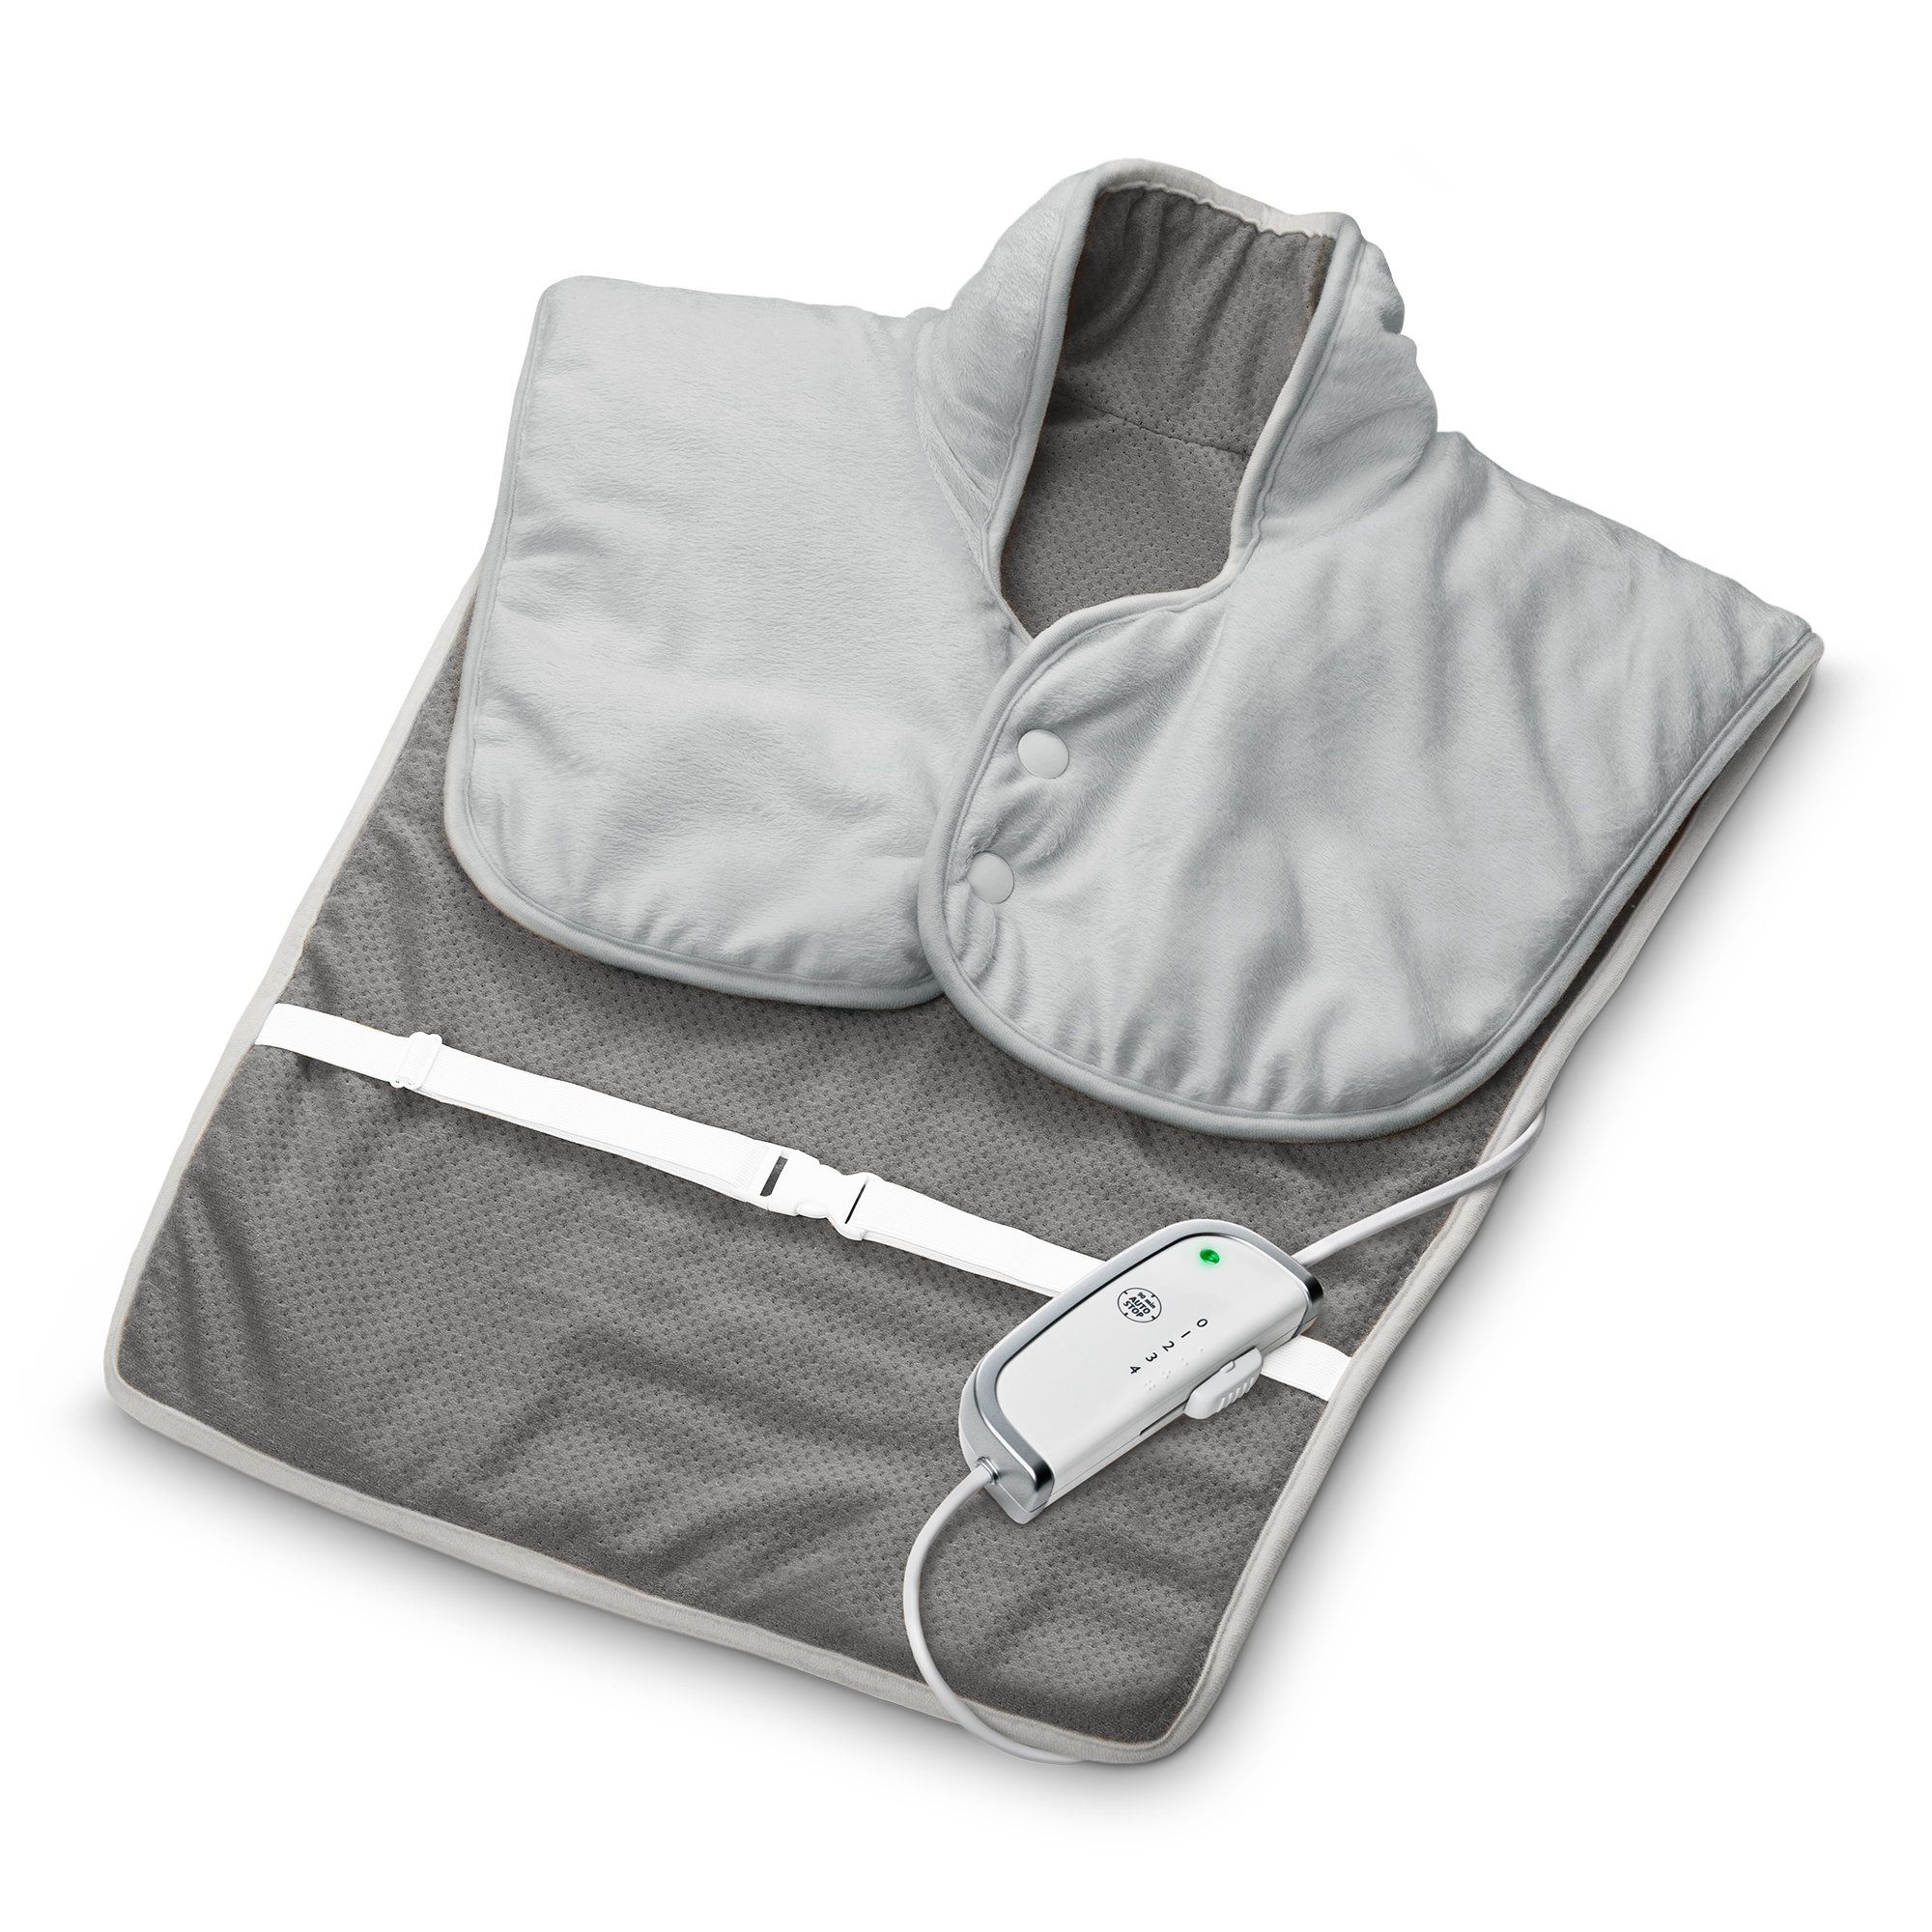 medisana HP 630 Nacken, Schulter und Rückenheizkissen | 4 Temperaturstufen | Überhitzungschutz